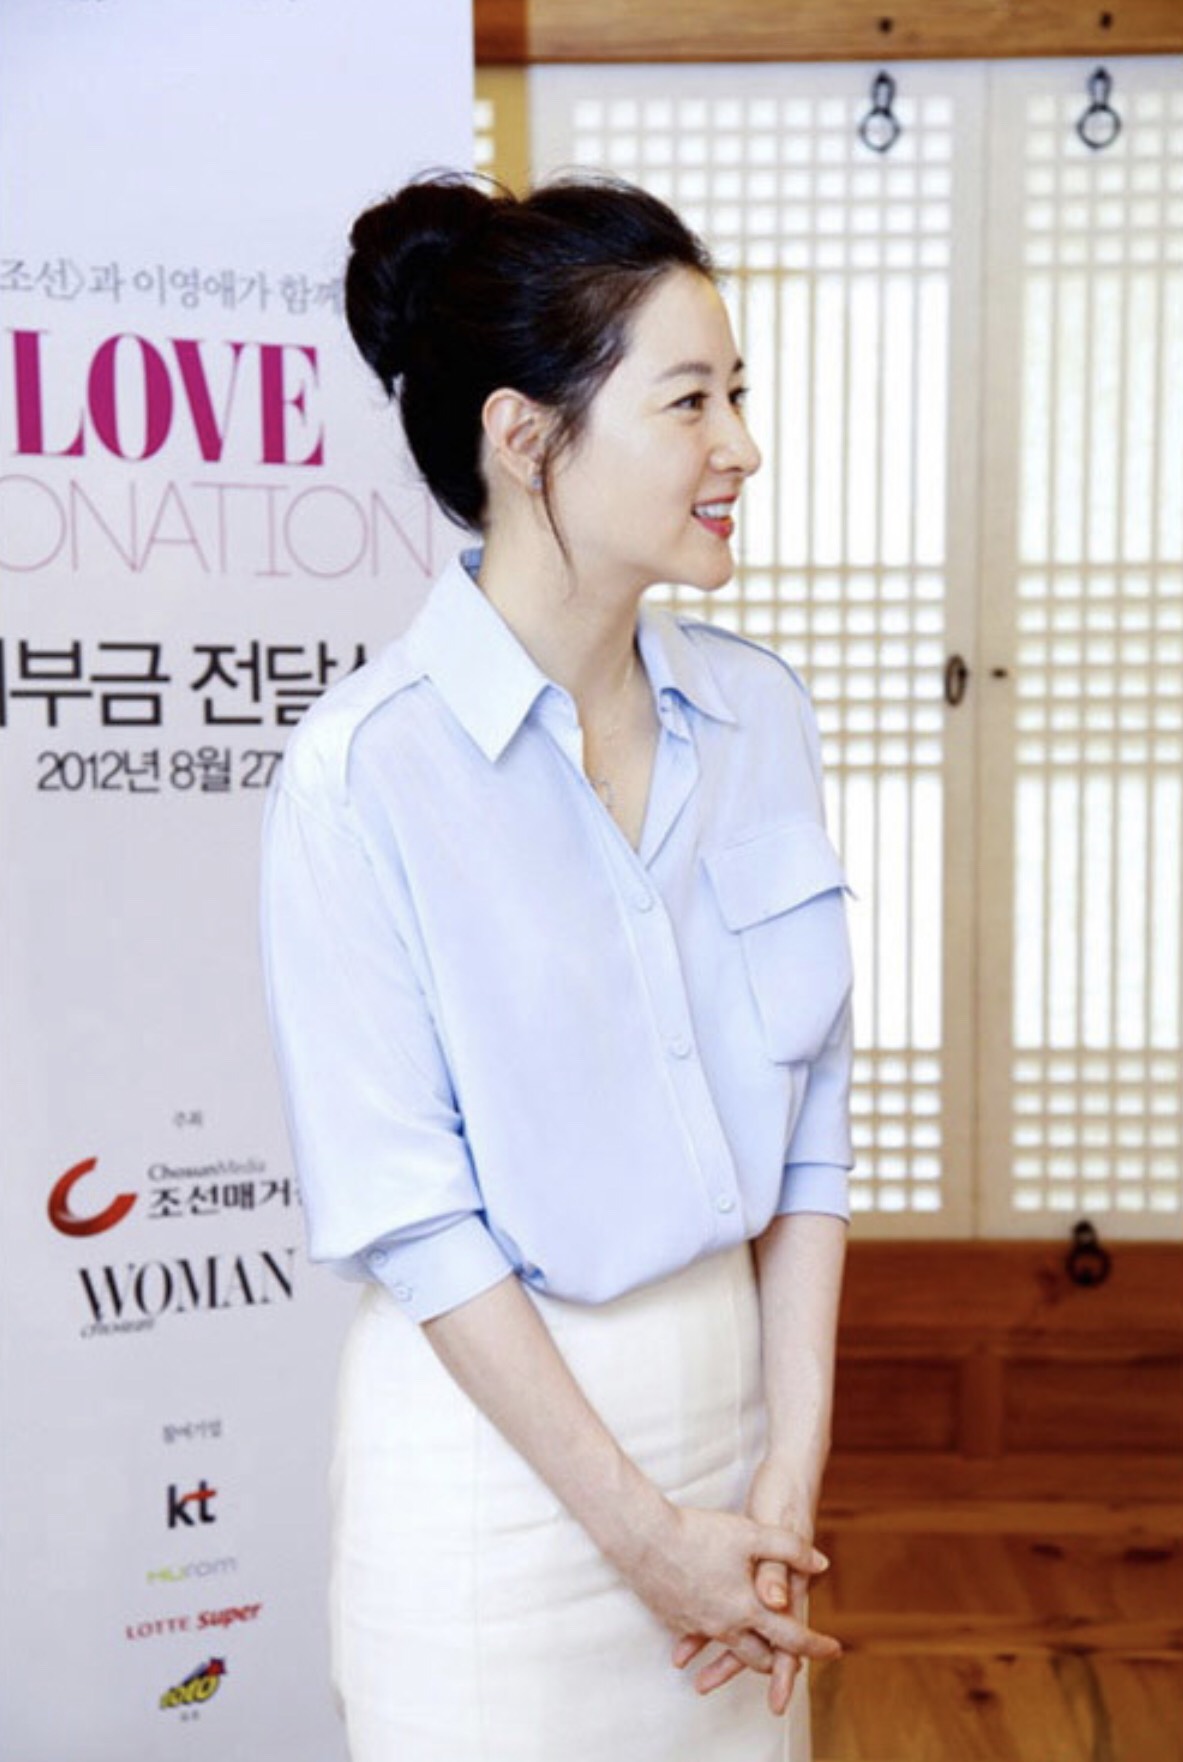  Lee Young Ae là biểu tượng của vẻ đẹp Hàn Quốc thuần khiết, nhã nhặn, cô chọn áo sơ mi xanh da trời nhạt với chân váy trắng đơn giản.